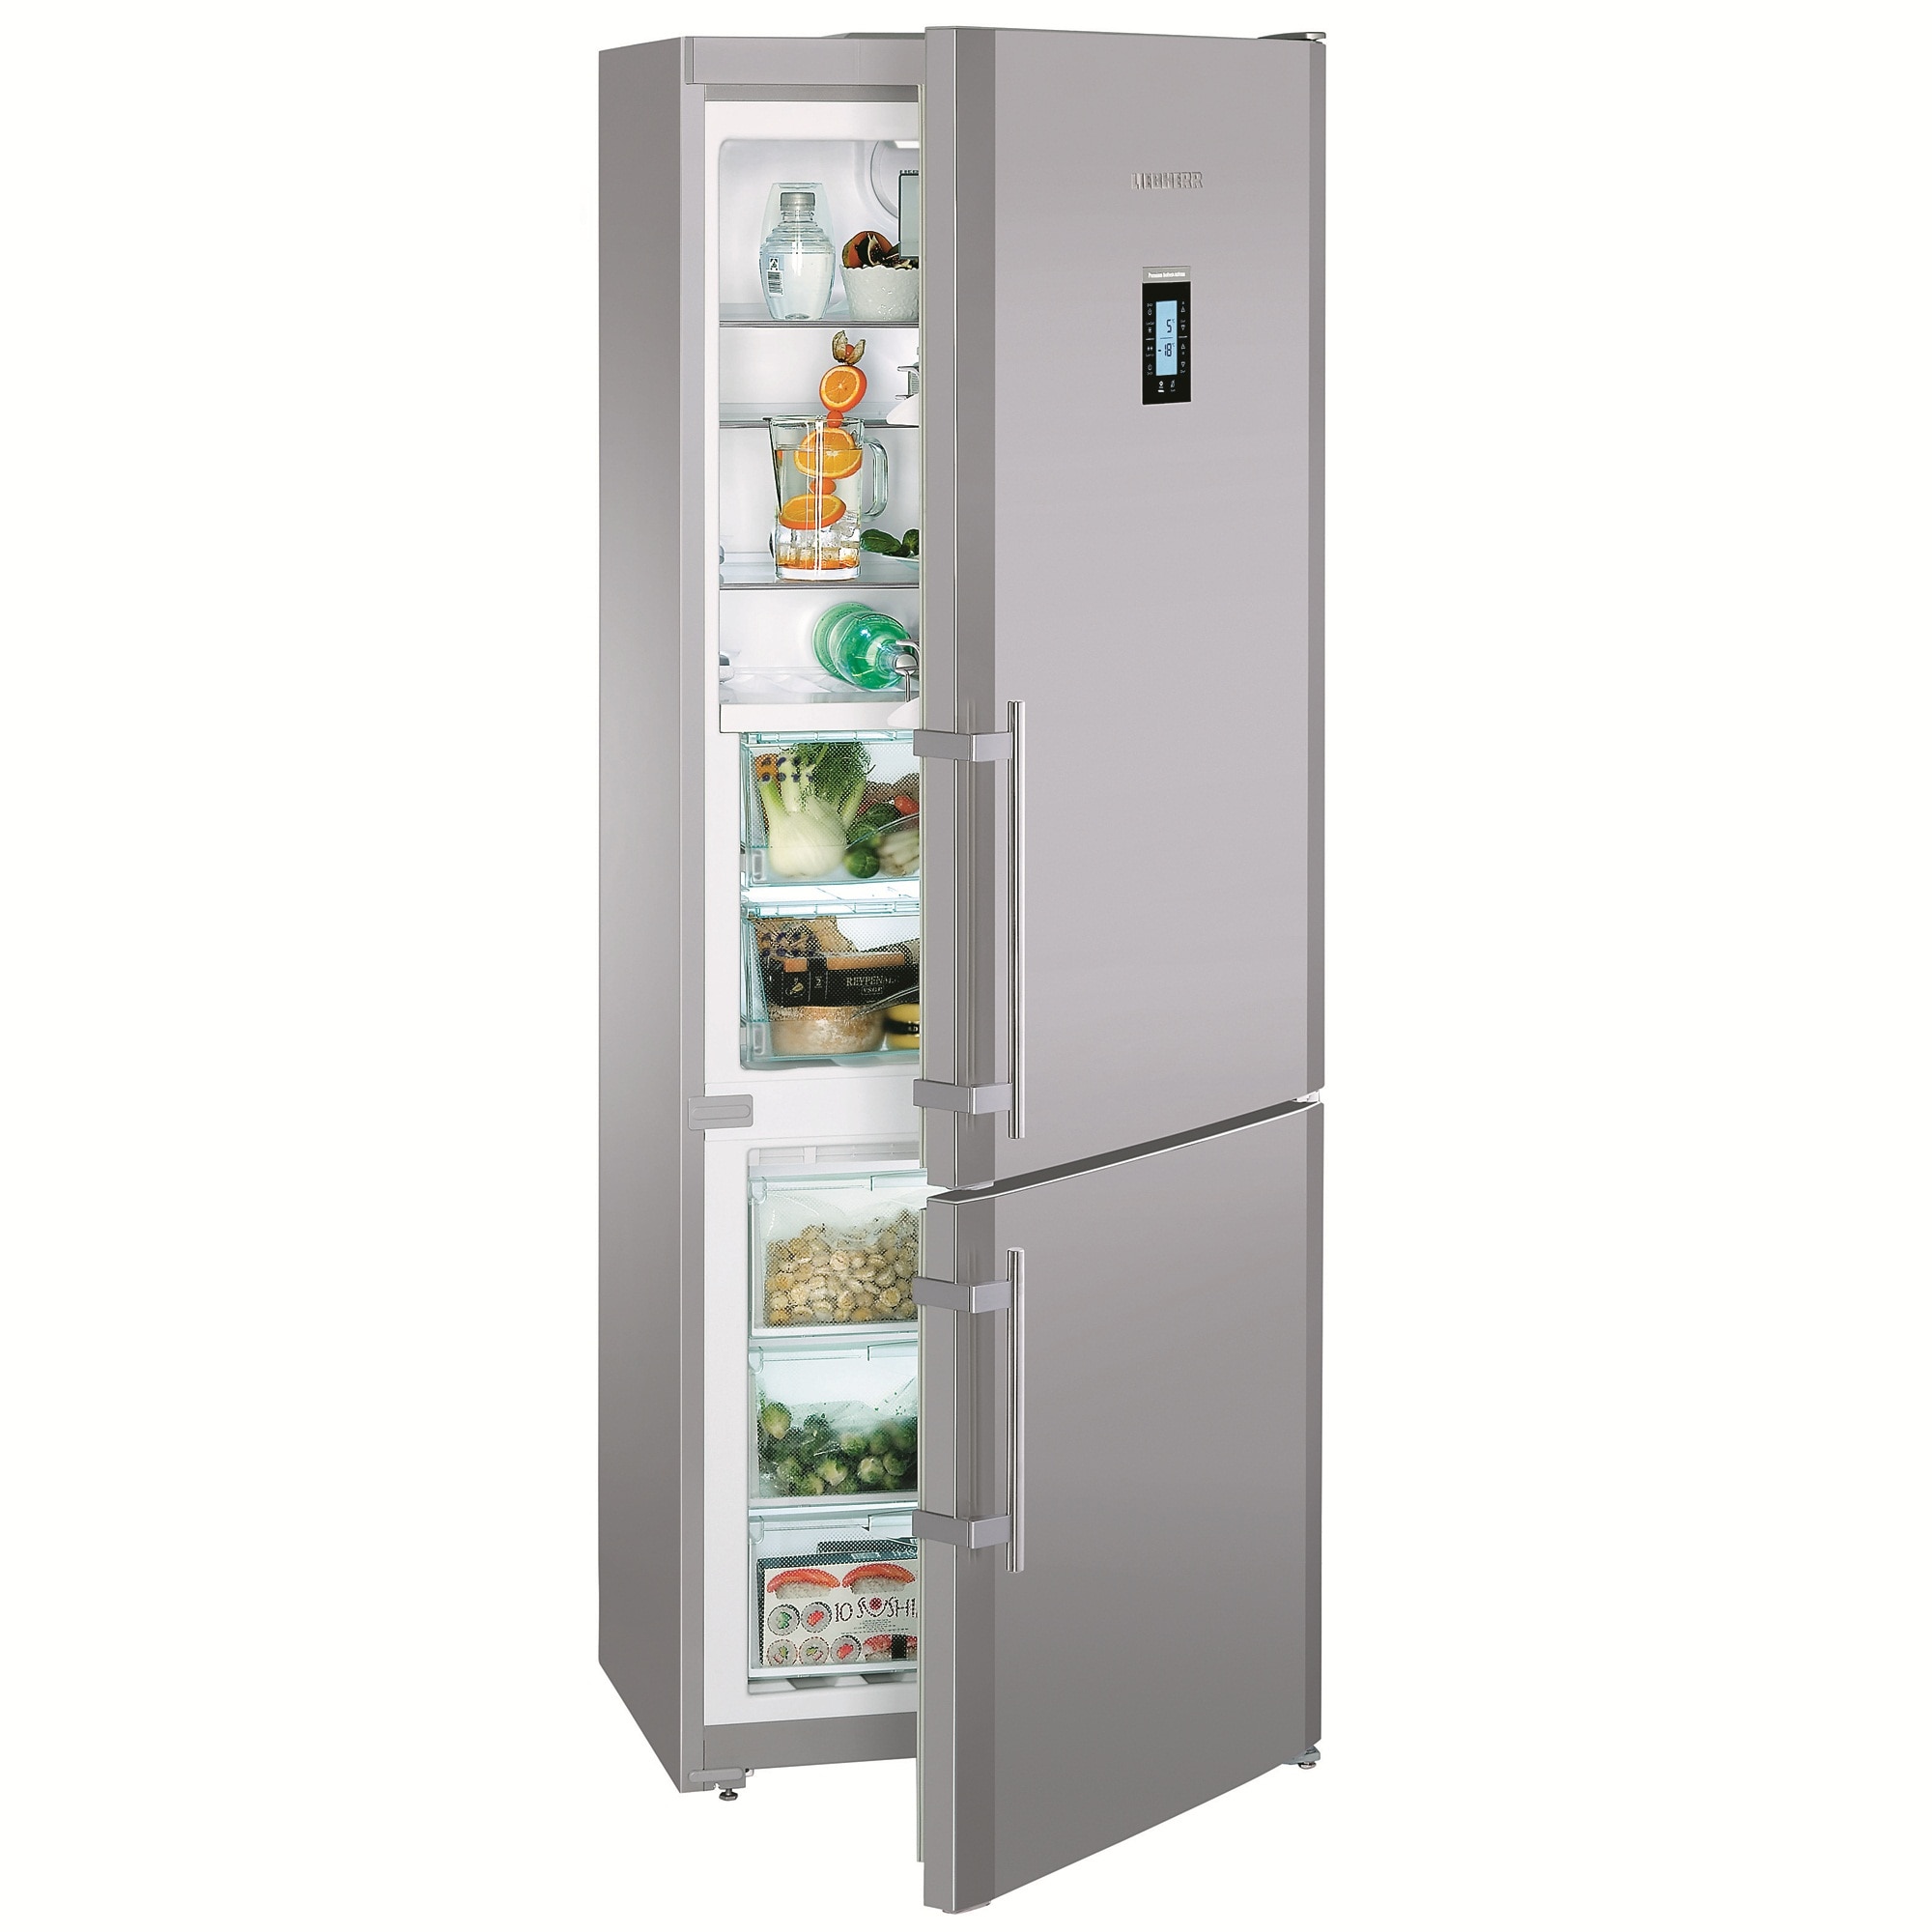 Официальные производители холодильников. Холодильник Liebherr CNPESF 5156. Холодильник Liebherr CNPES 5156. Холодильник Liebherr CNPESF 5156, серебристый. Liebherr холодильники CNPESF 5156-21 001.